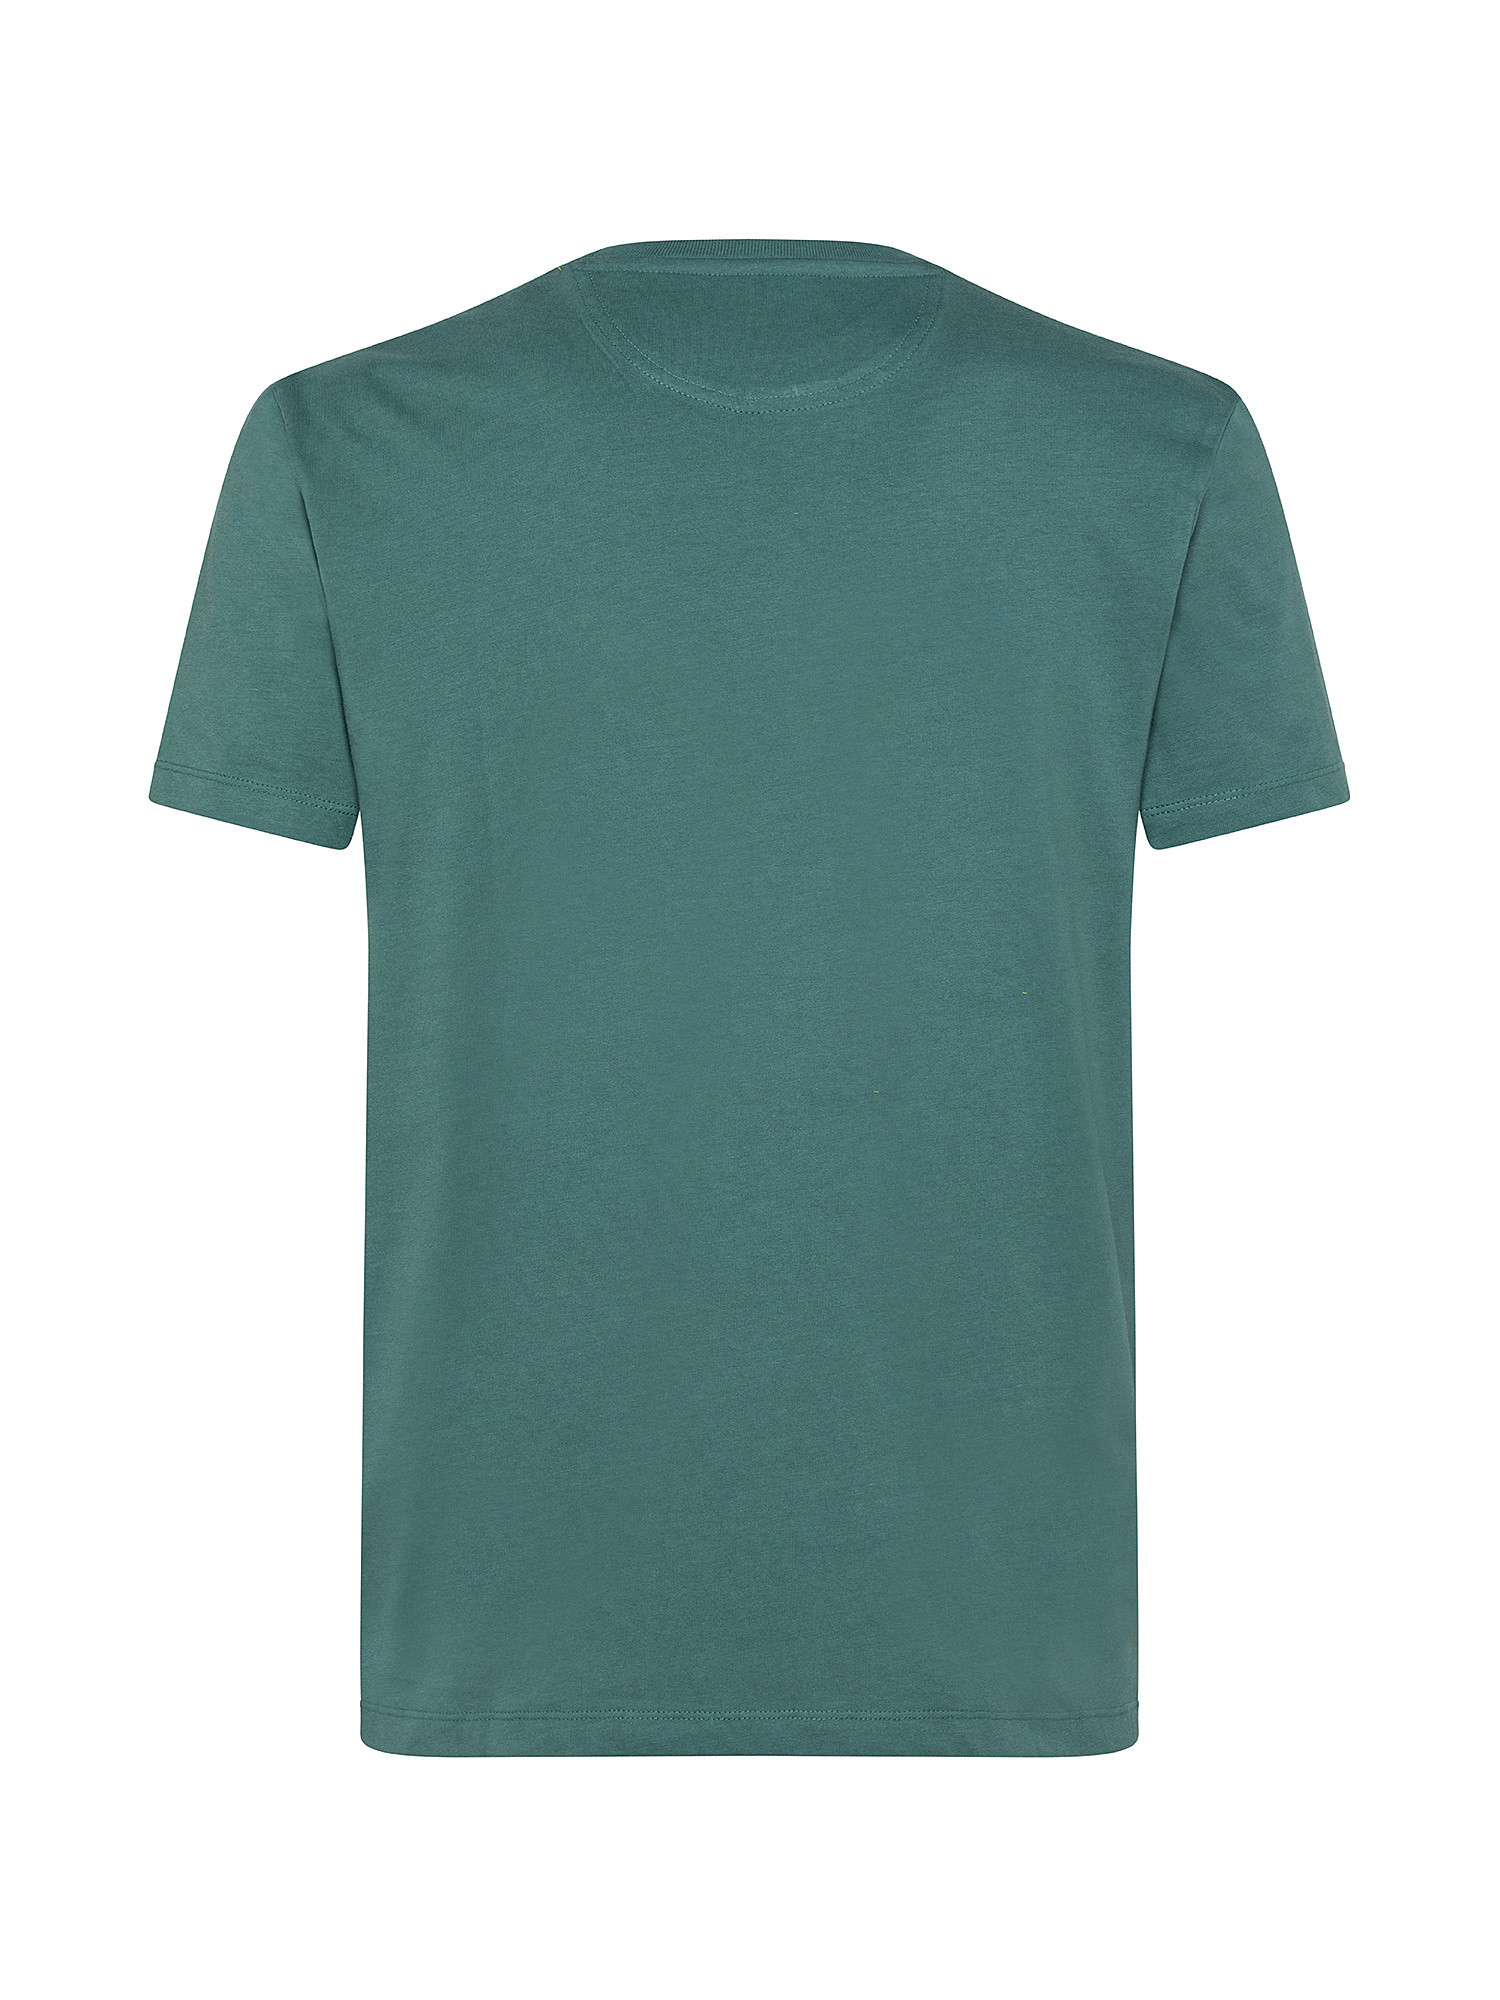 T-shirt da Uomo Dunstan River, Verde, large image number 1